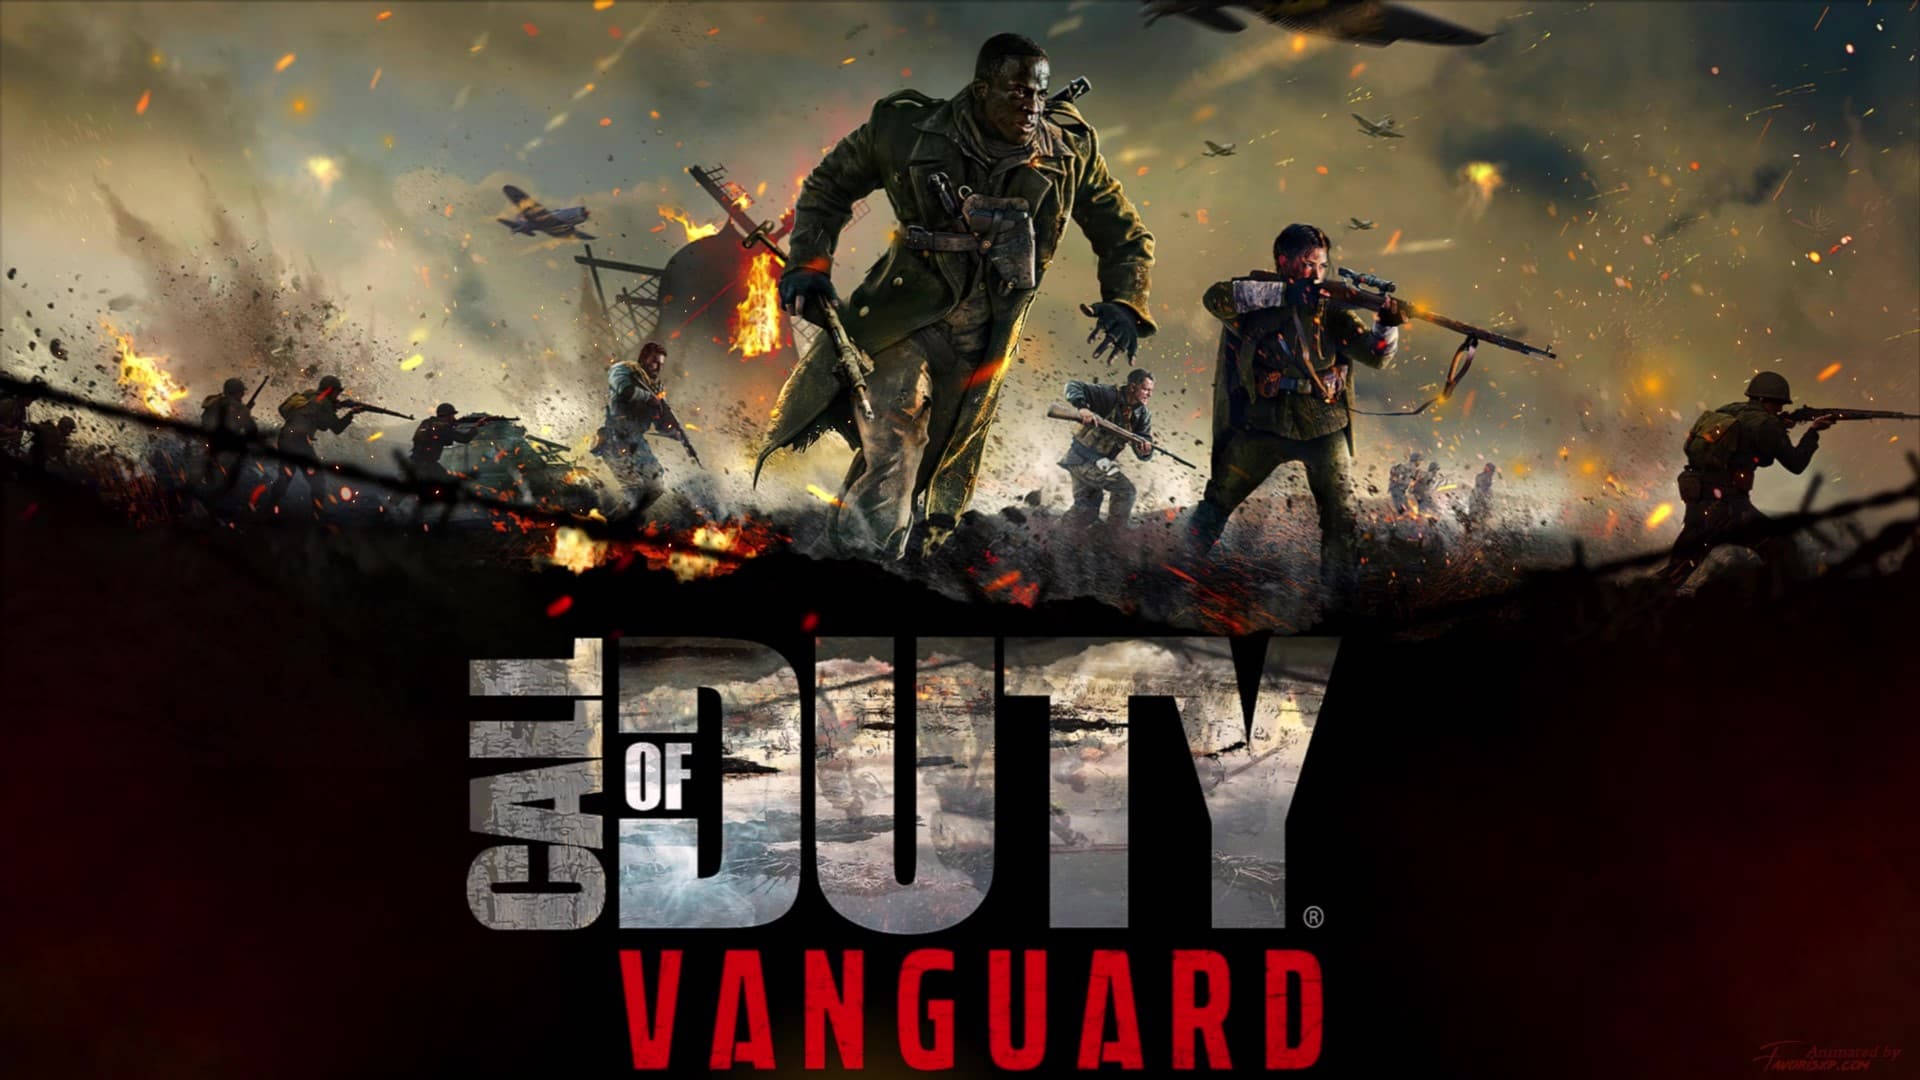 Erlebensie Den Nervenkitzel Des Kampfes In Call Of Duty Vanguard. Wallpaper